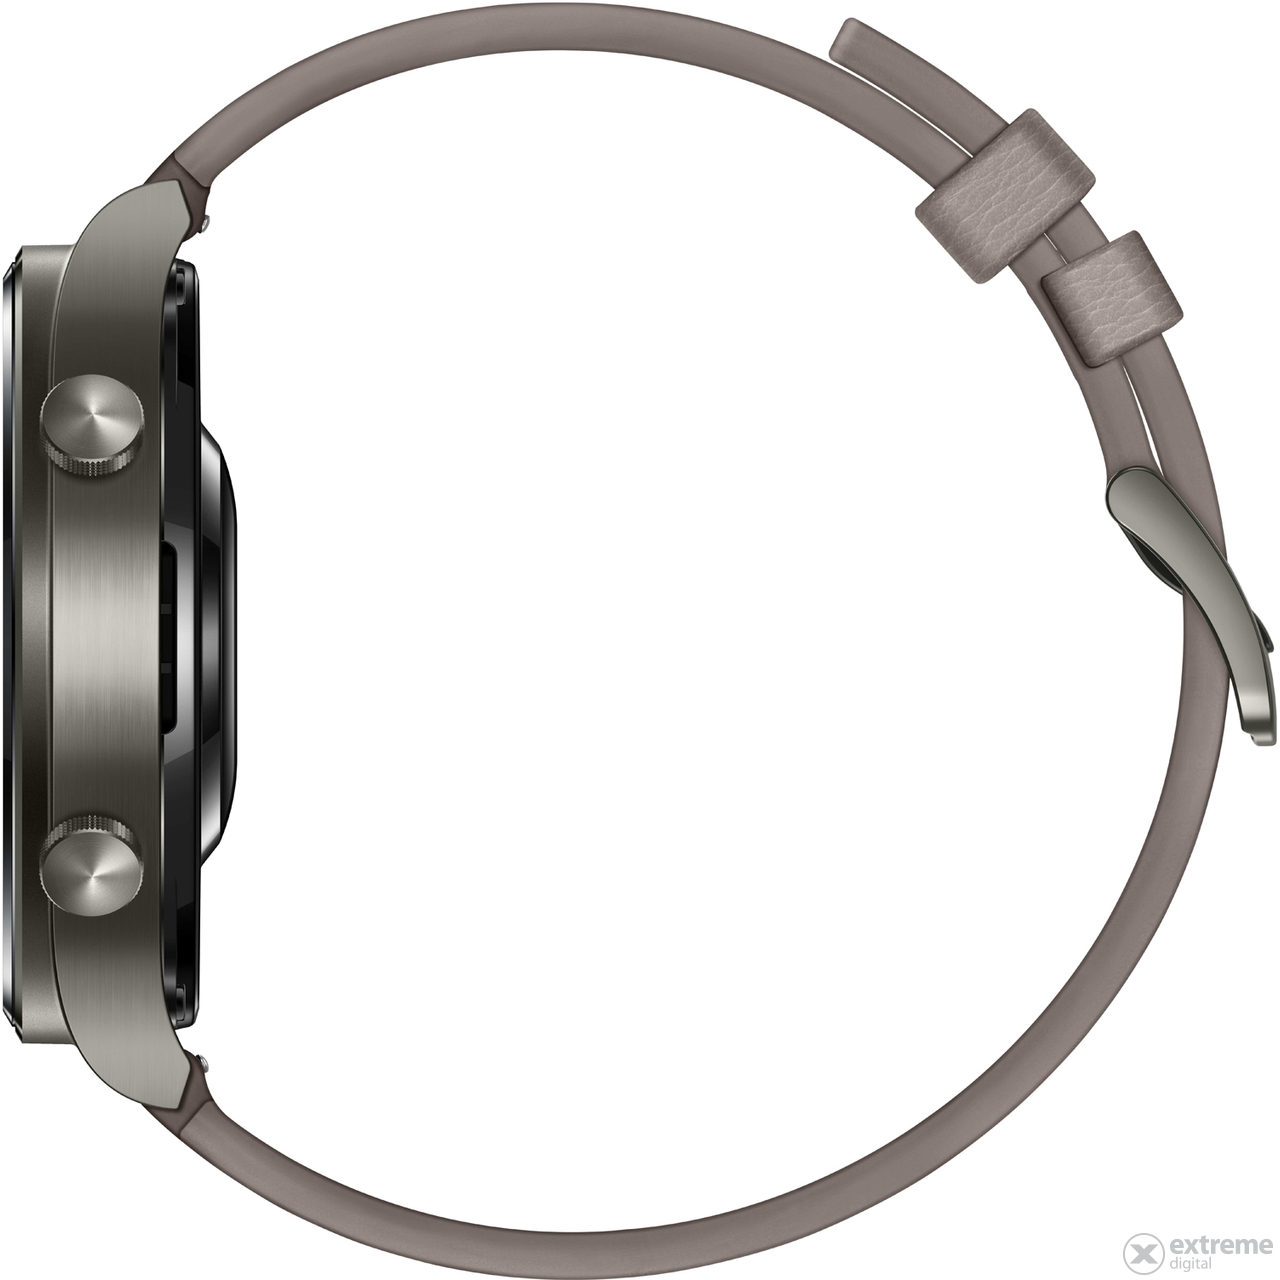 Huawei Watch GT 2 Pro okosóra, Nebula Gray